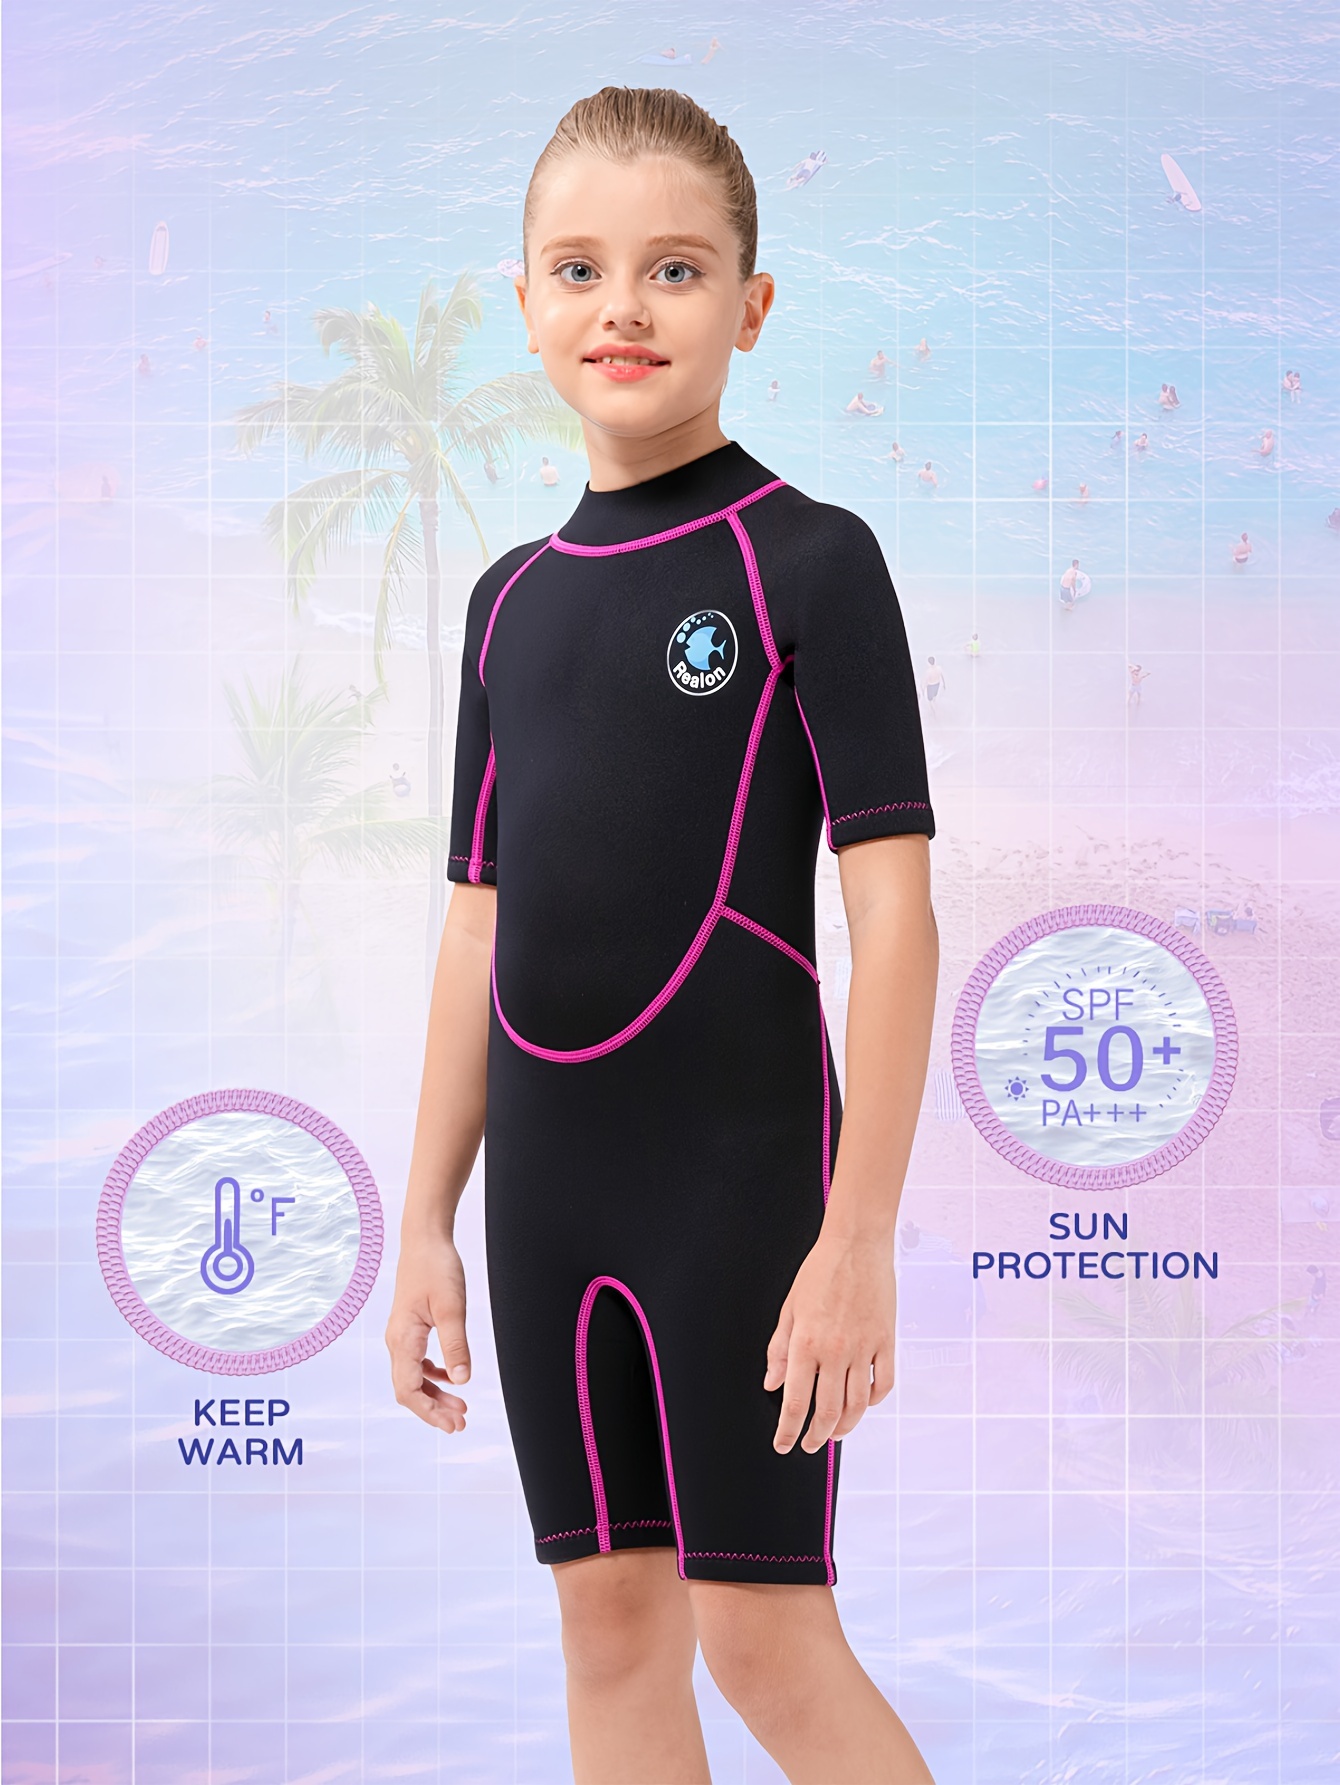 REALON Wetsuit Top Men 2mm Neoprene Womens Kids Jacket Long